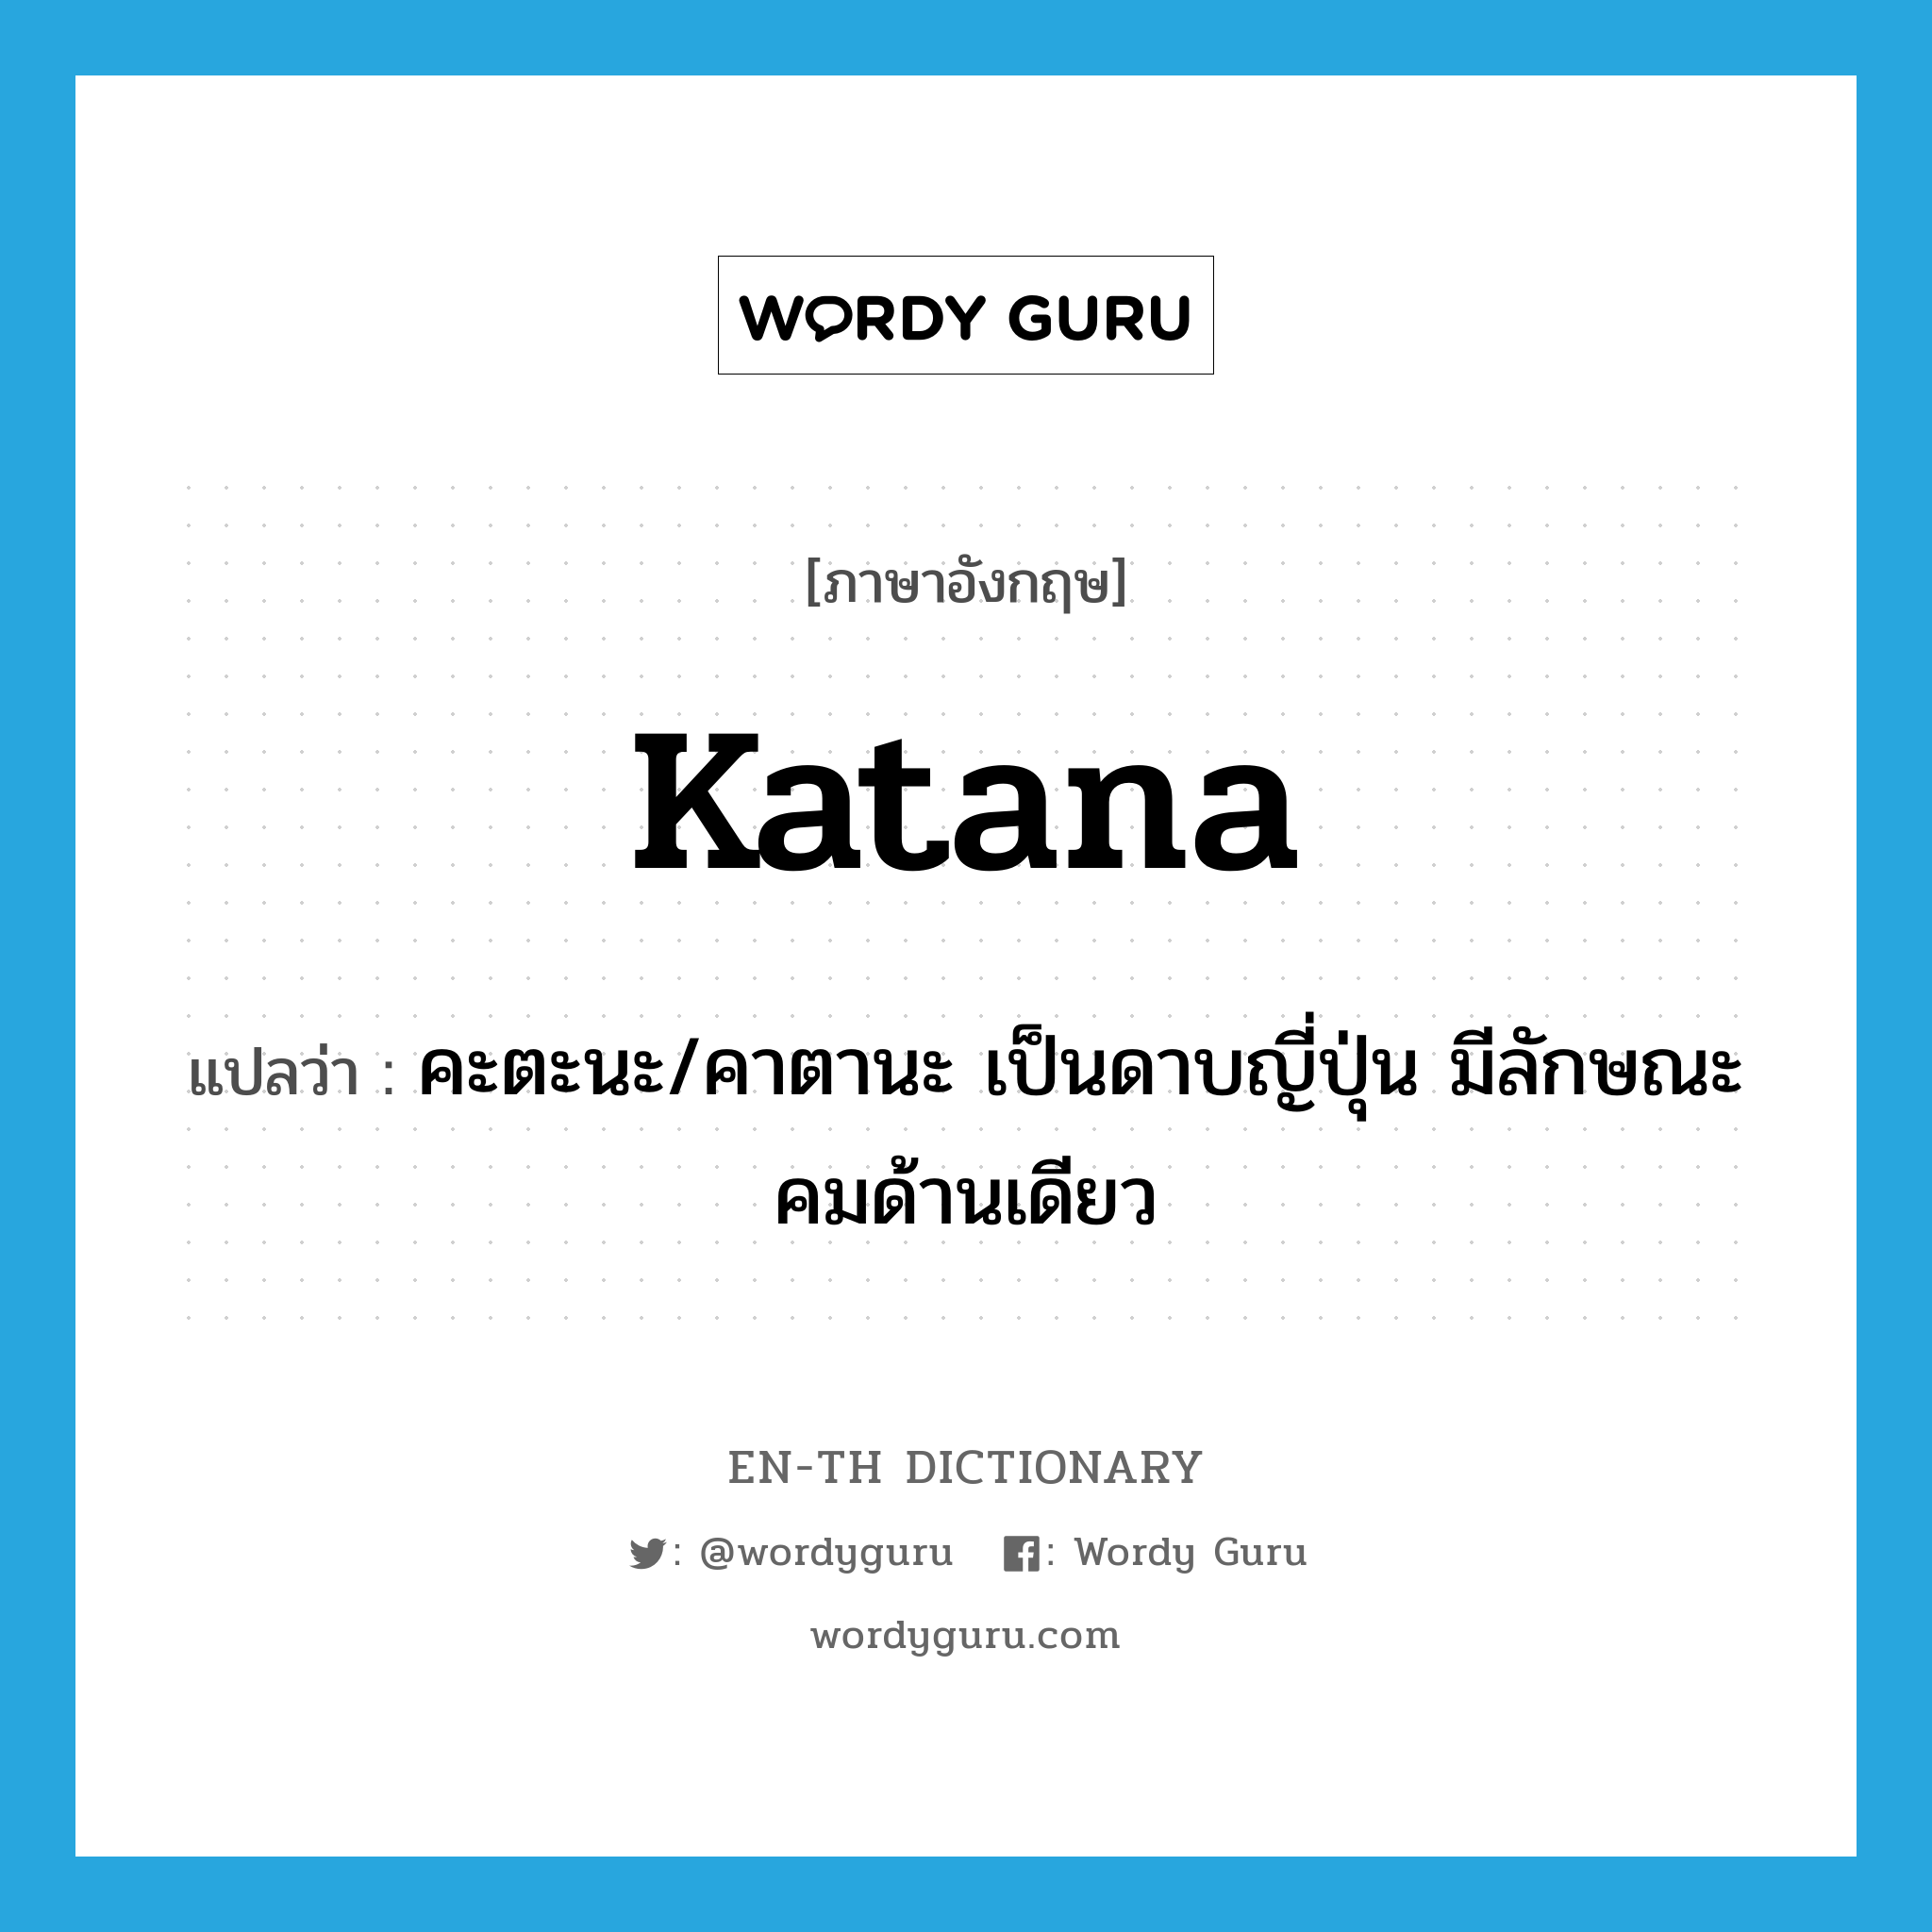 Katana แปลว่า?, คำศัพท์ภาษาอังกฤษ Katana แปลว่า คะตะนะ/คาตานะ เป็นดาบญี่ปุ่น มีลักษณะคมด้านเดียว